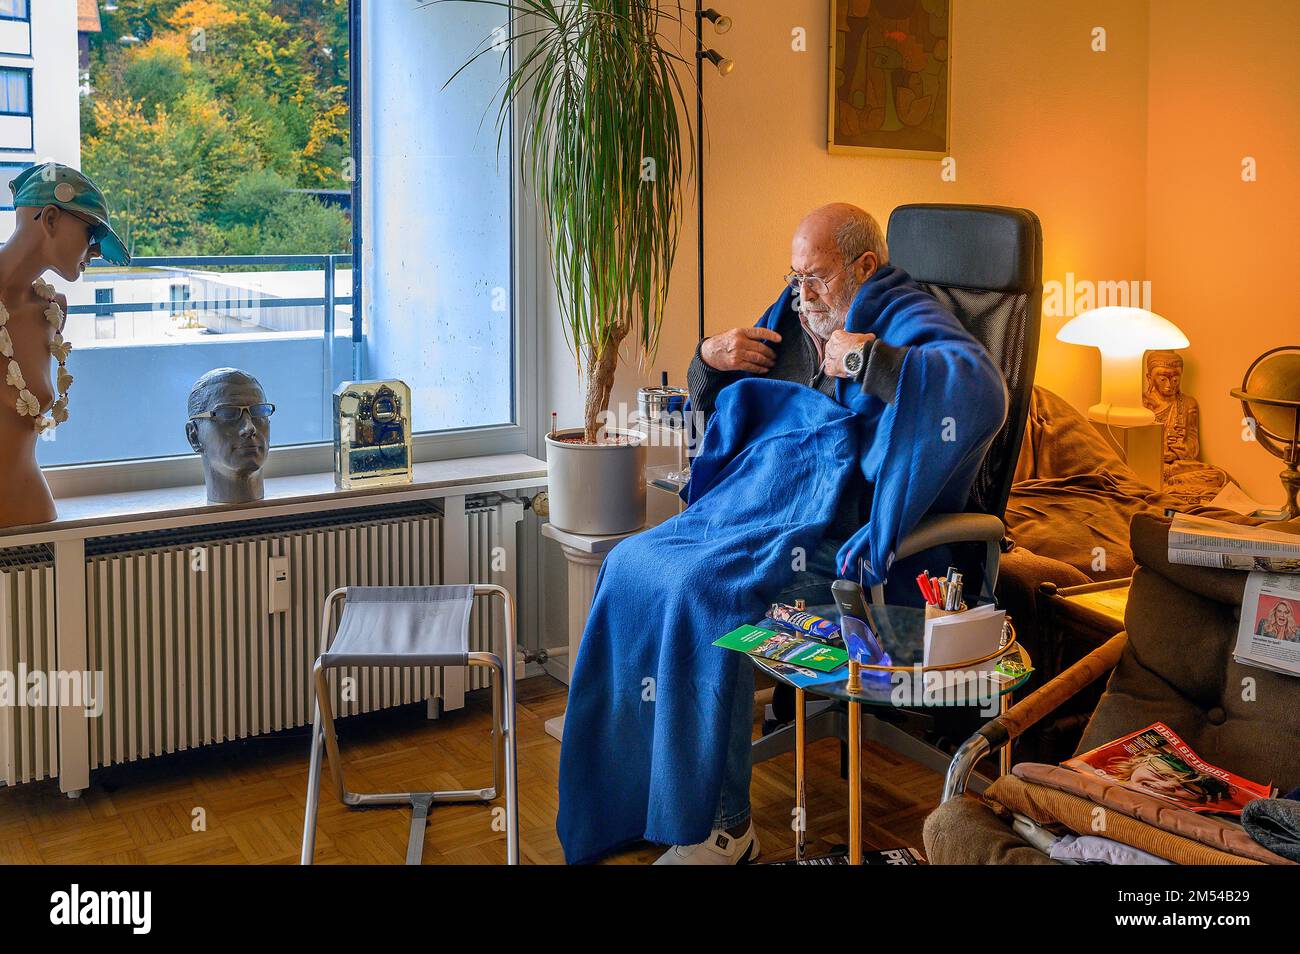 Viejo envuelto en mantas, ahorrar energía, congelar debido a Putin, ahorrar costos de calefacción, baja temperatura ambiente, Baviera, Alemania Foto de stock